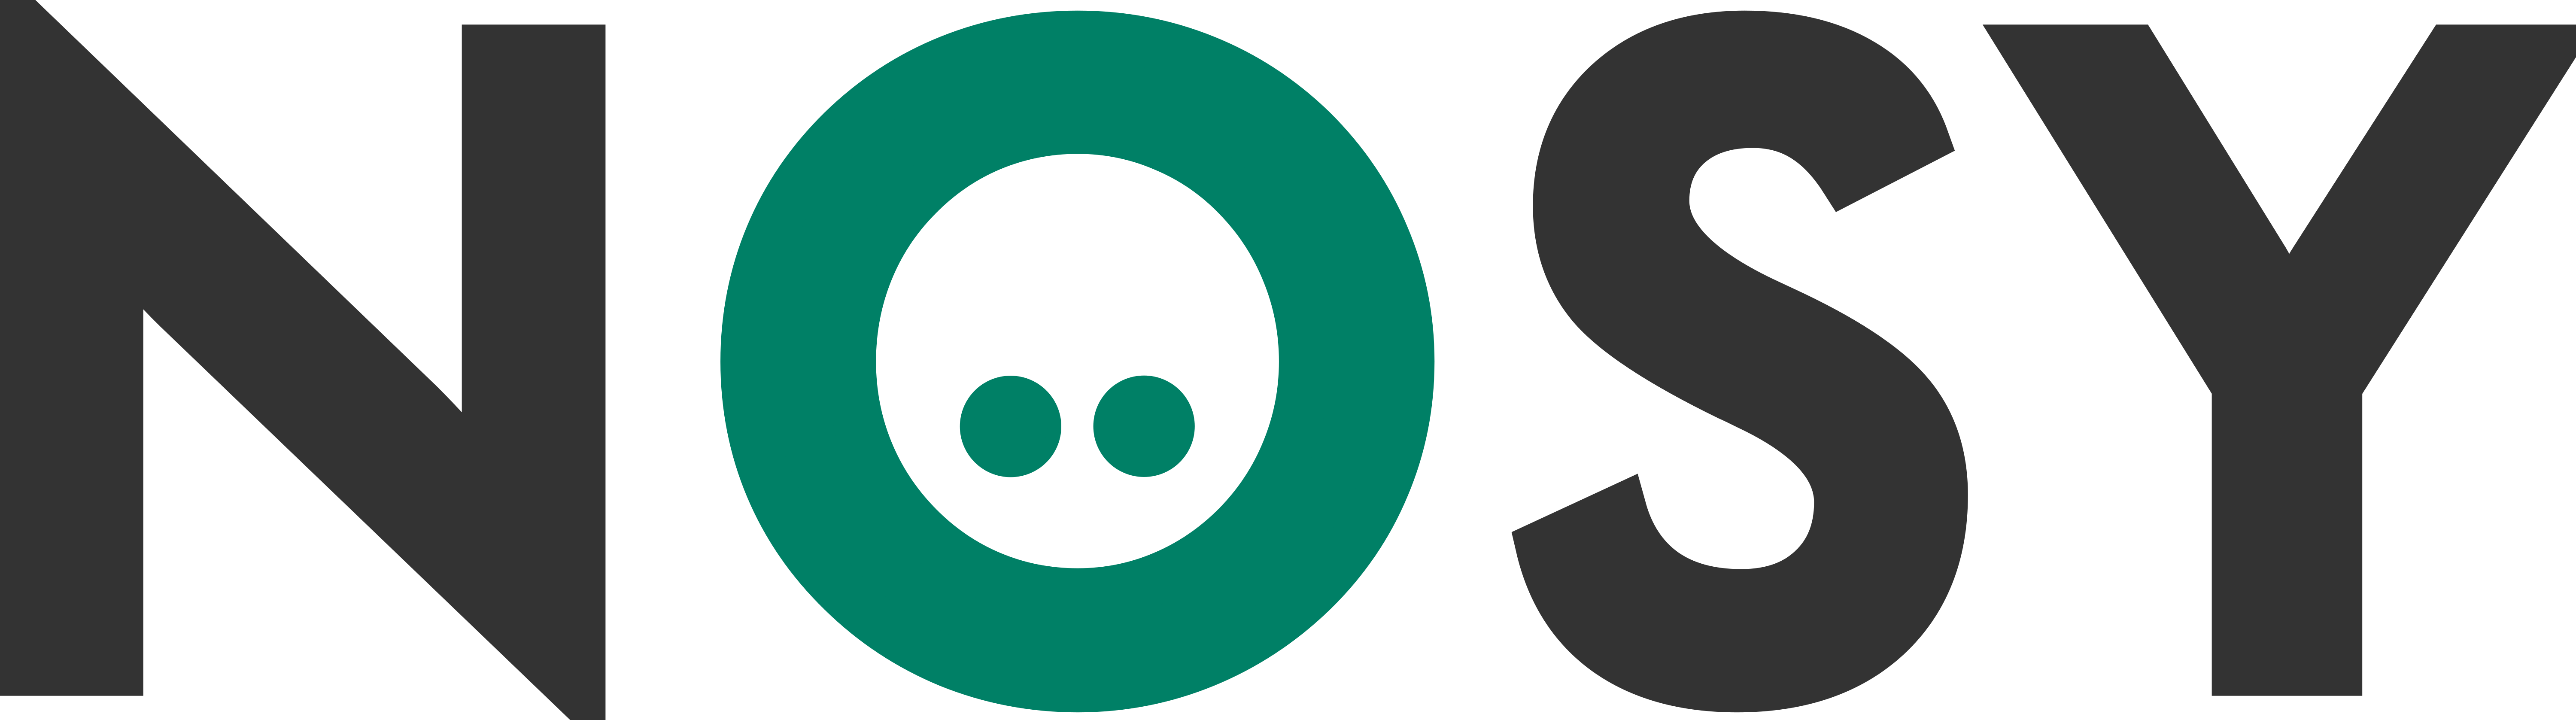 Nosy logo